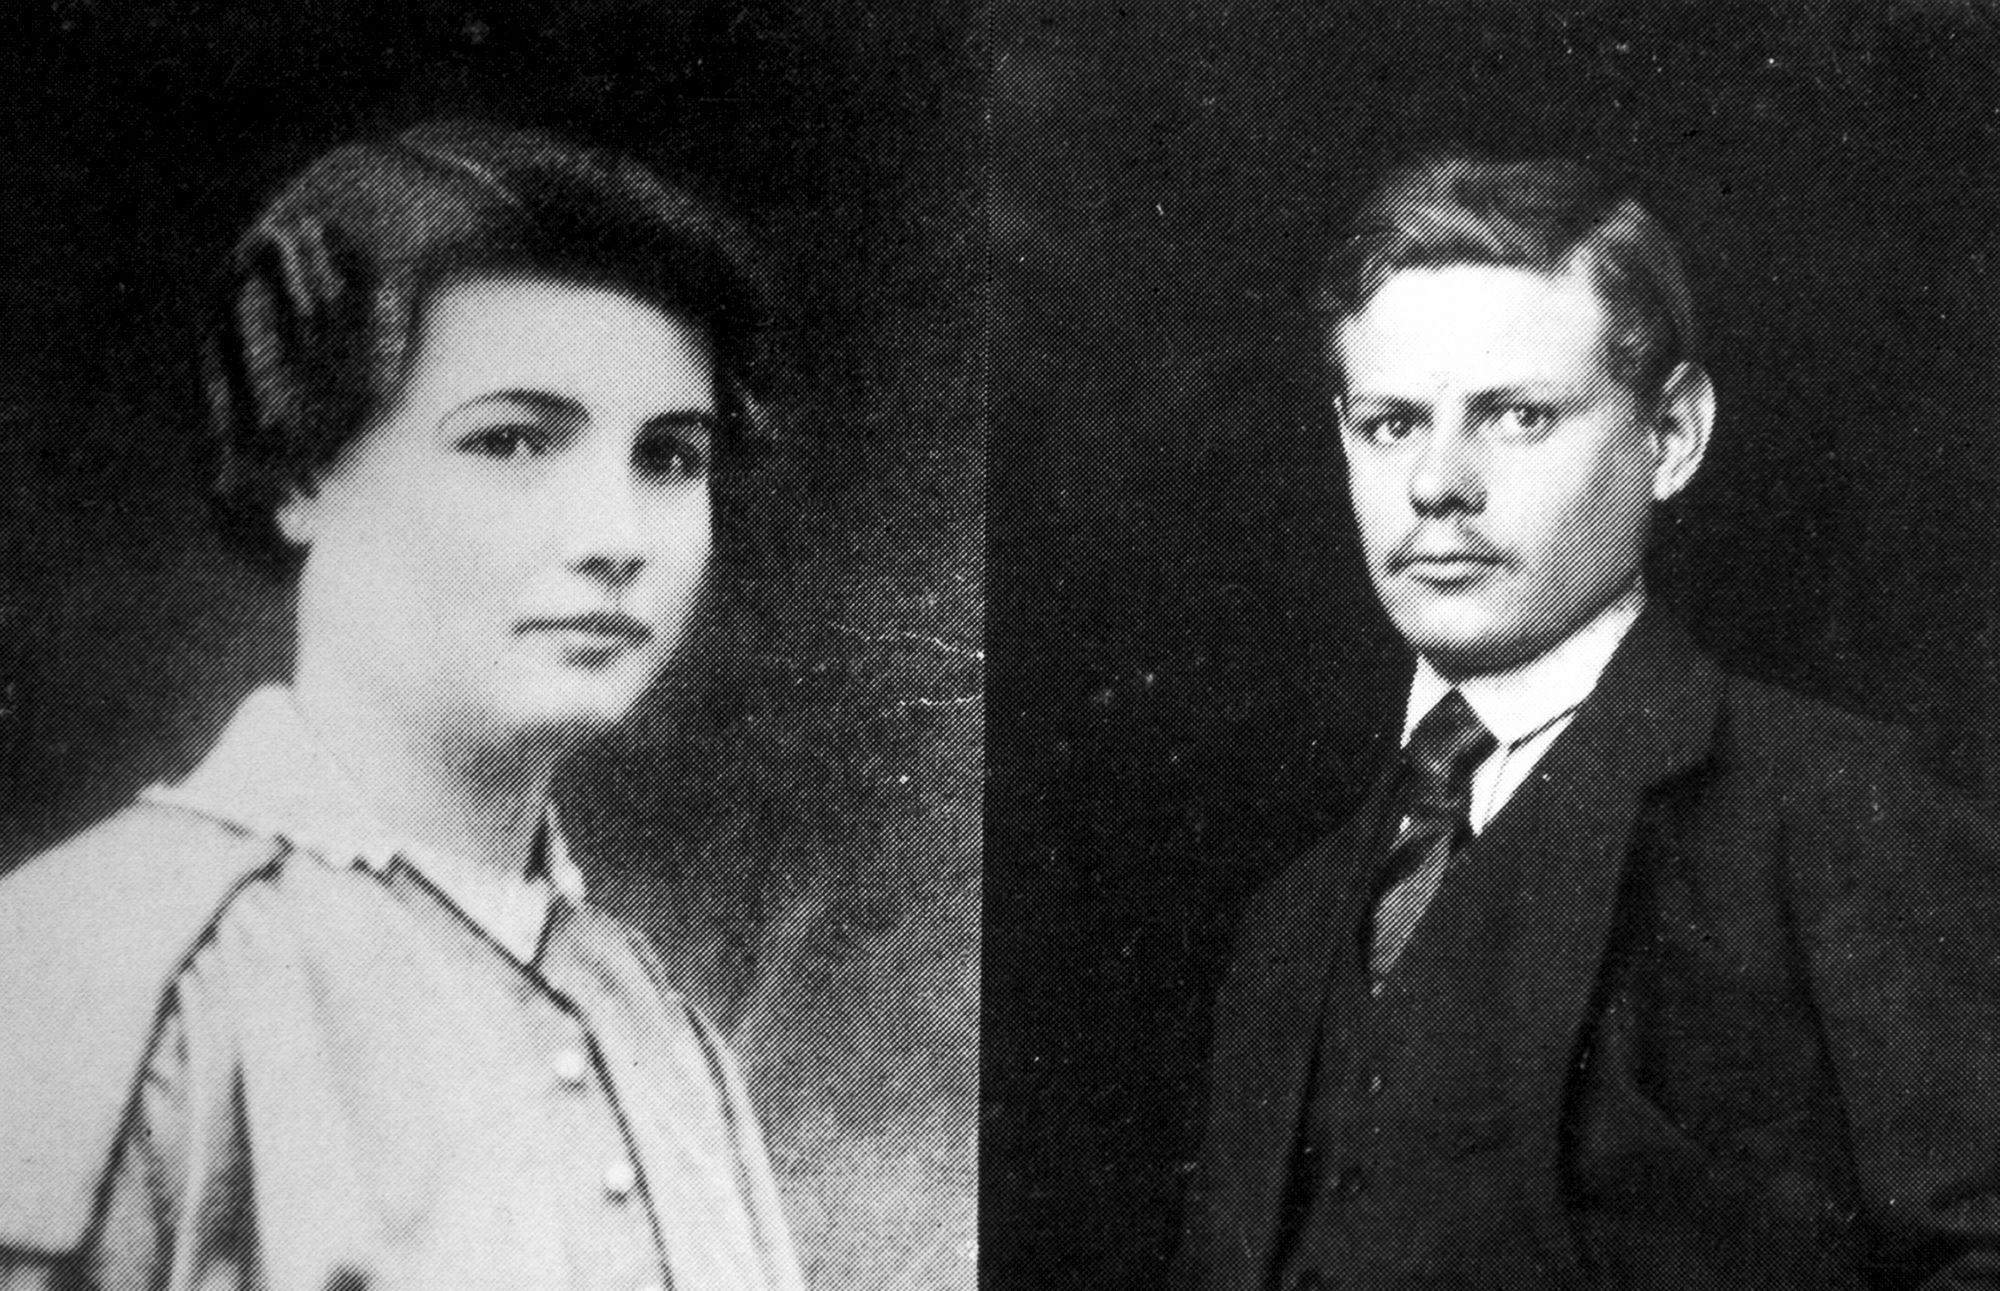 Herinneringsprentje van het echtpaar August Van Royen en Anna Raes uit de Molendreef in Sint-Niklaas, mei 1940 © archief Stad Sint-Niklaas, schenking Ward Van Royen